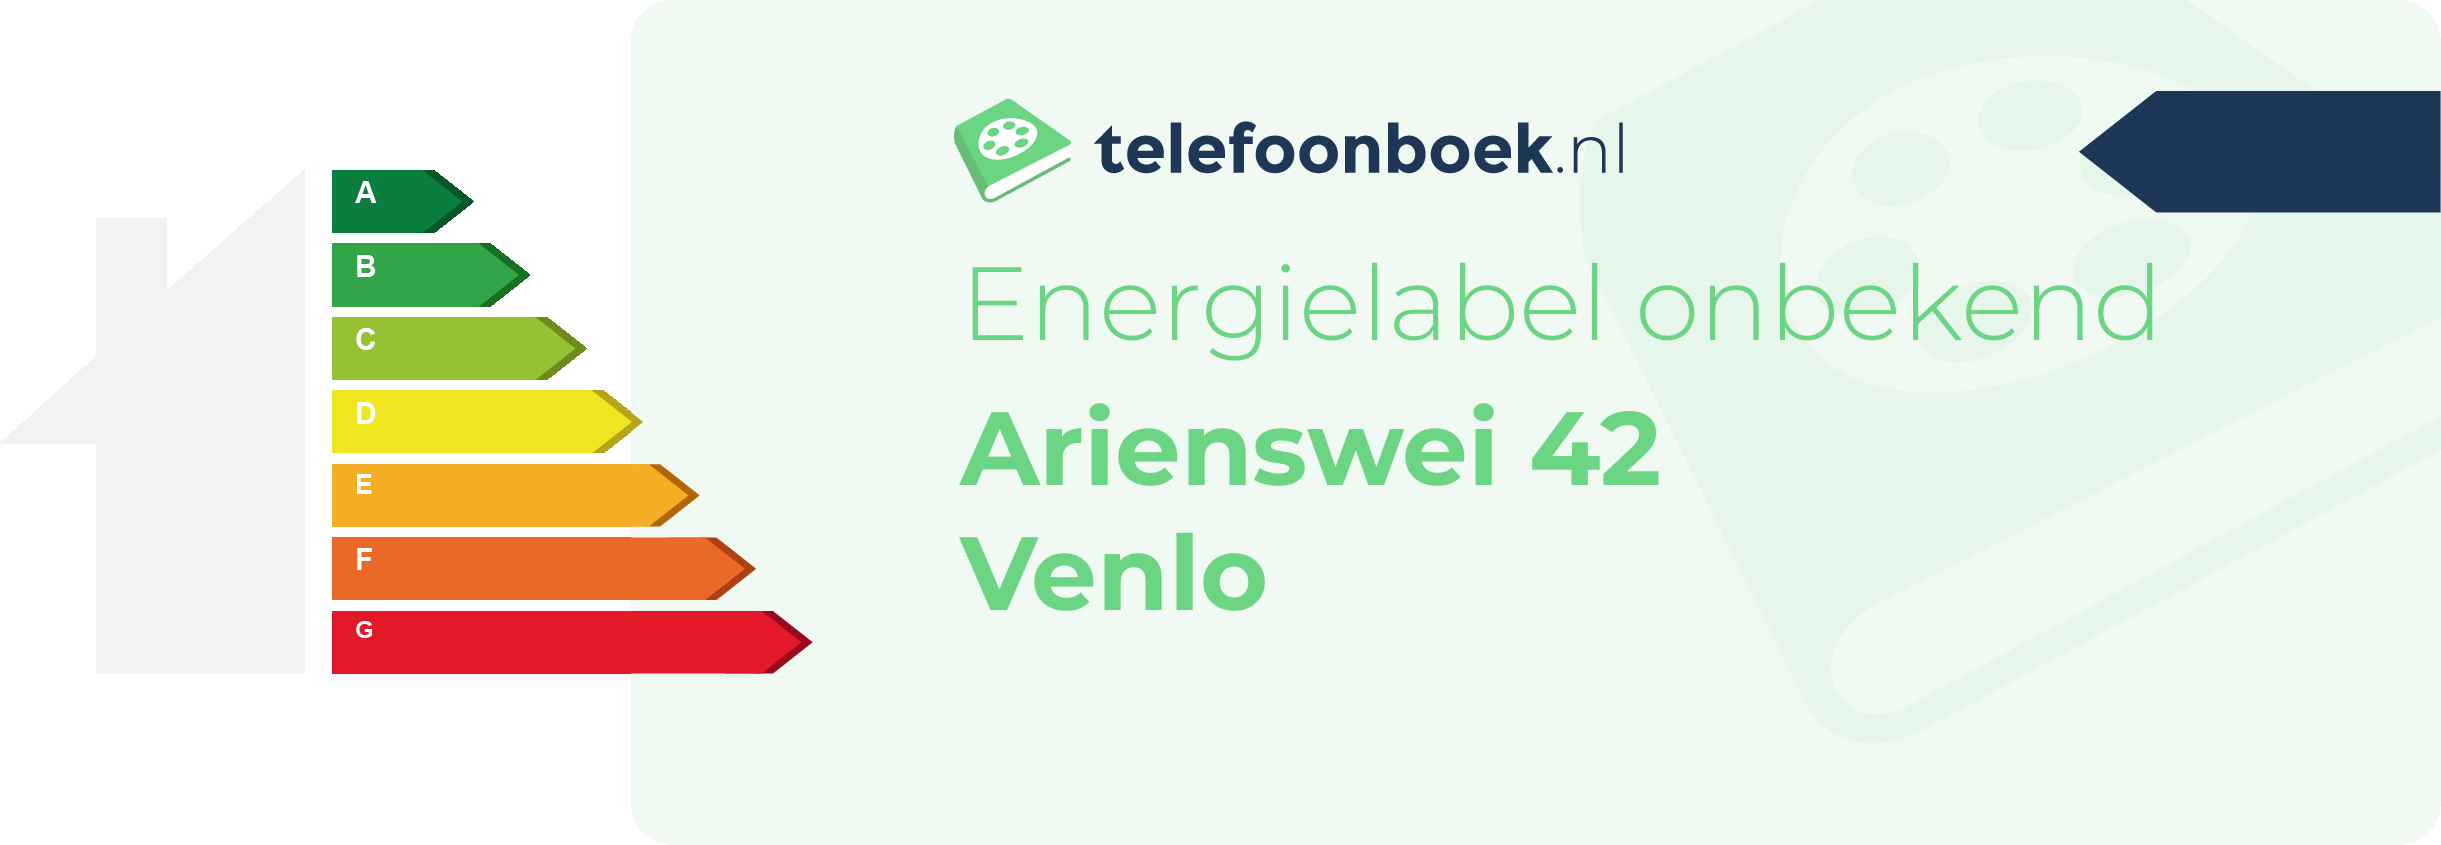 Energielabel Arienswei 42 Venlo